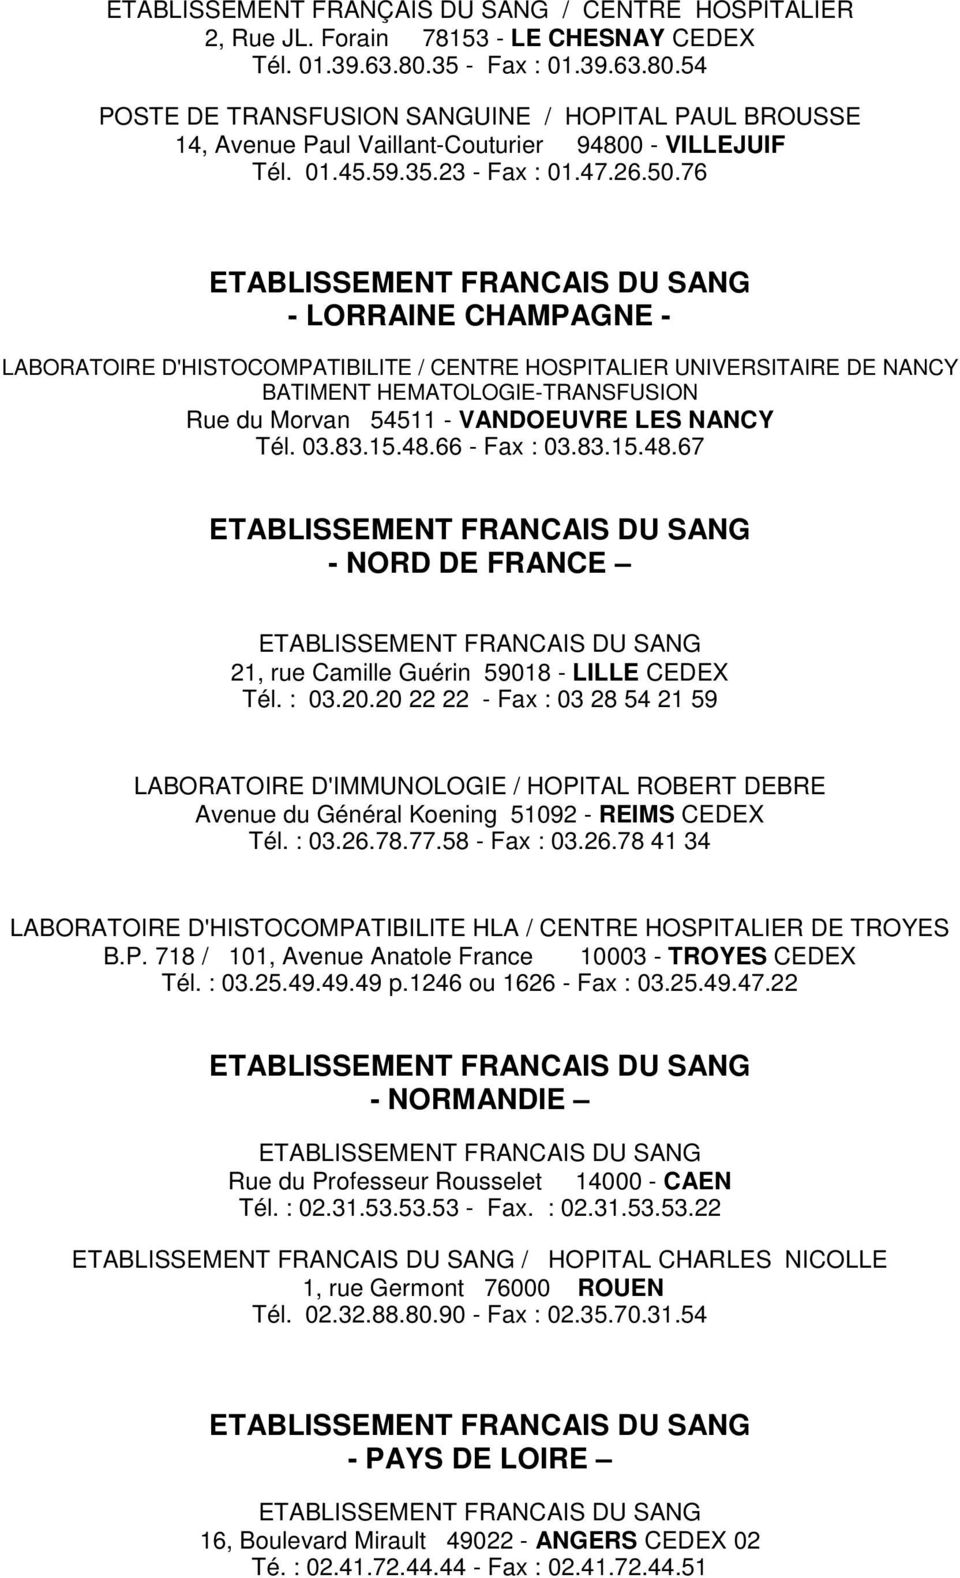 76 - LORRAINE CHAMPAGNE - LABORATOIRE D'HISTOCOMPATIBILITE / CENTRE HOSPITALIER UNIVERSITAIRE DE NANCY BATIMENT HEMATOLOGIE-TRANSFUSION Rue du Morvan 54511 - VANDOEUVRE LES NANCY Tél. 03.83.15.48.